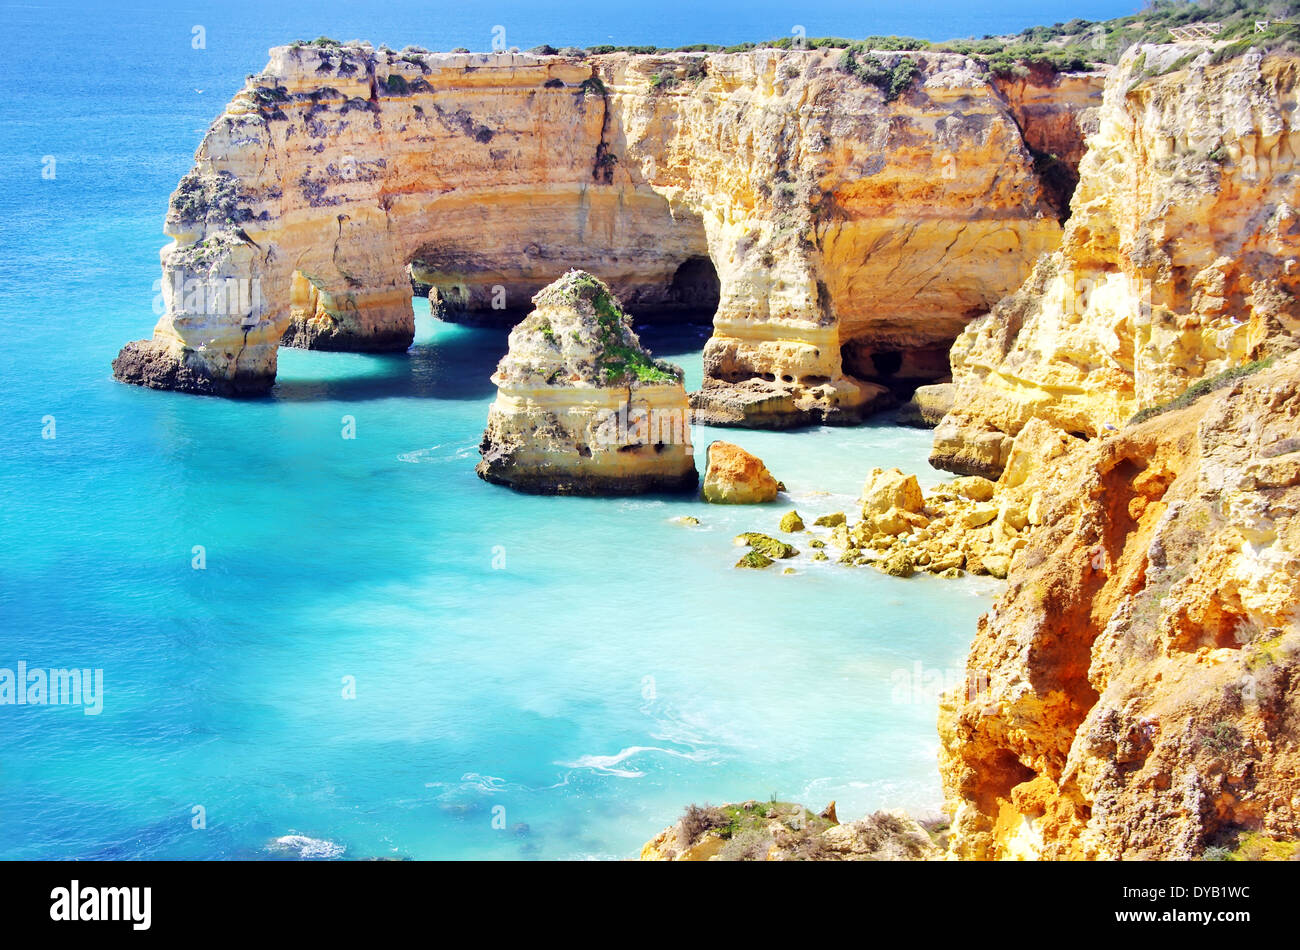 La plage de Marinha, située sur la côte Atlantique au Portugal, Algarve. Banque D'Images